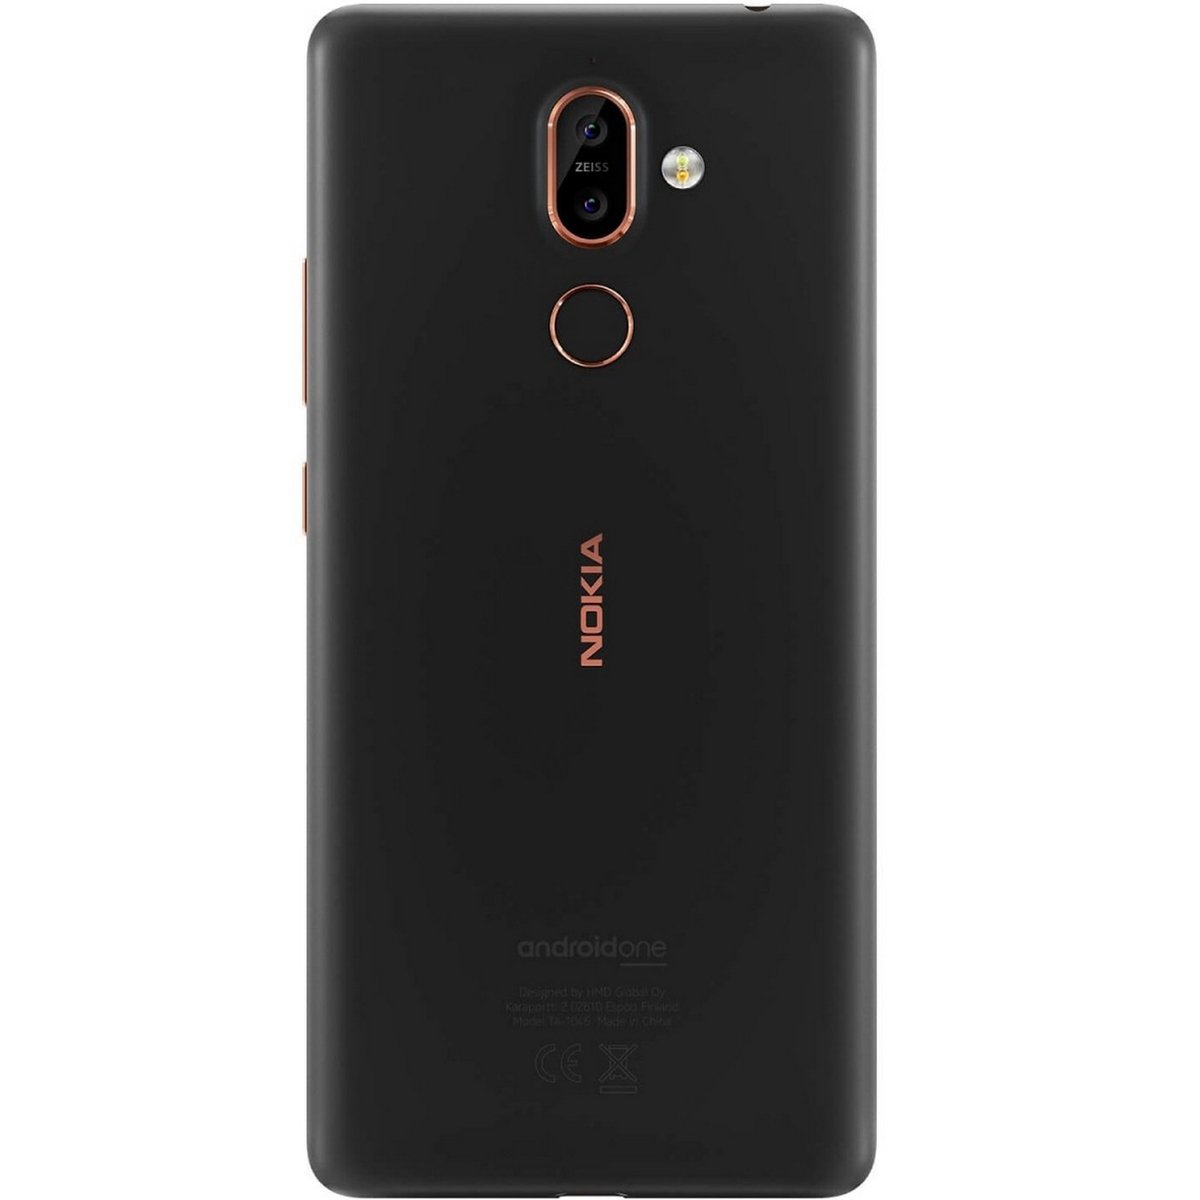 Nokia 7 Plus 64GB Black Copper